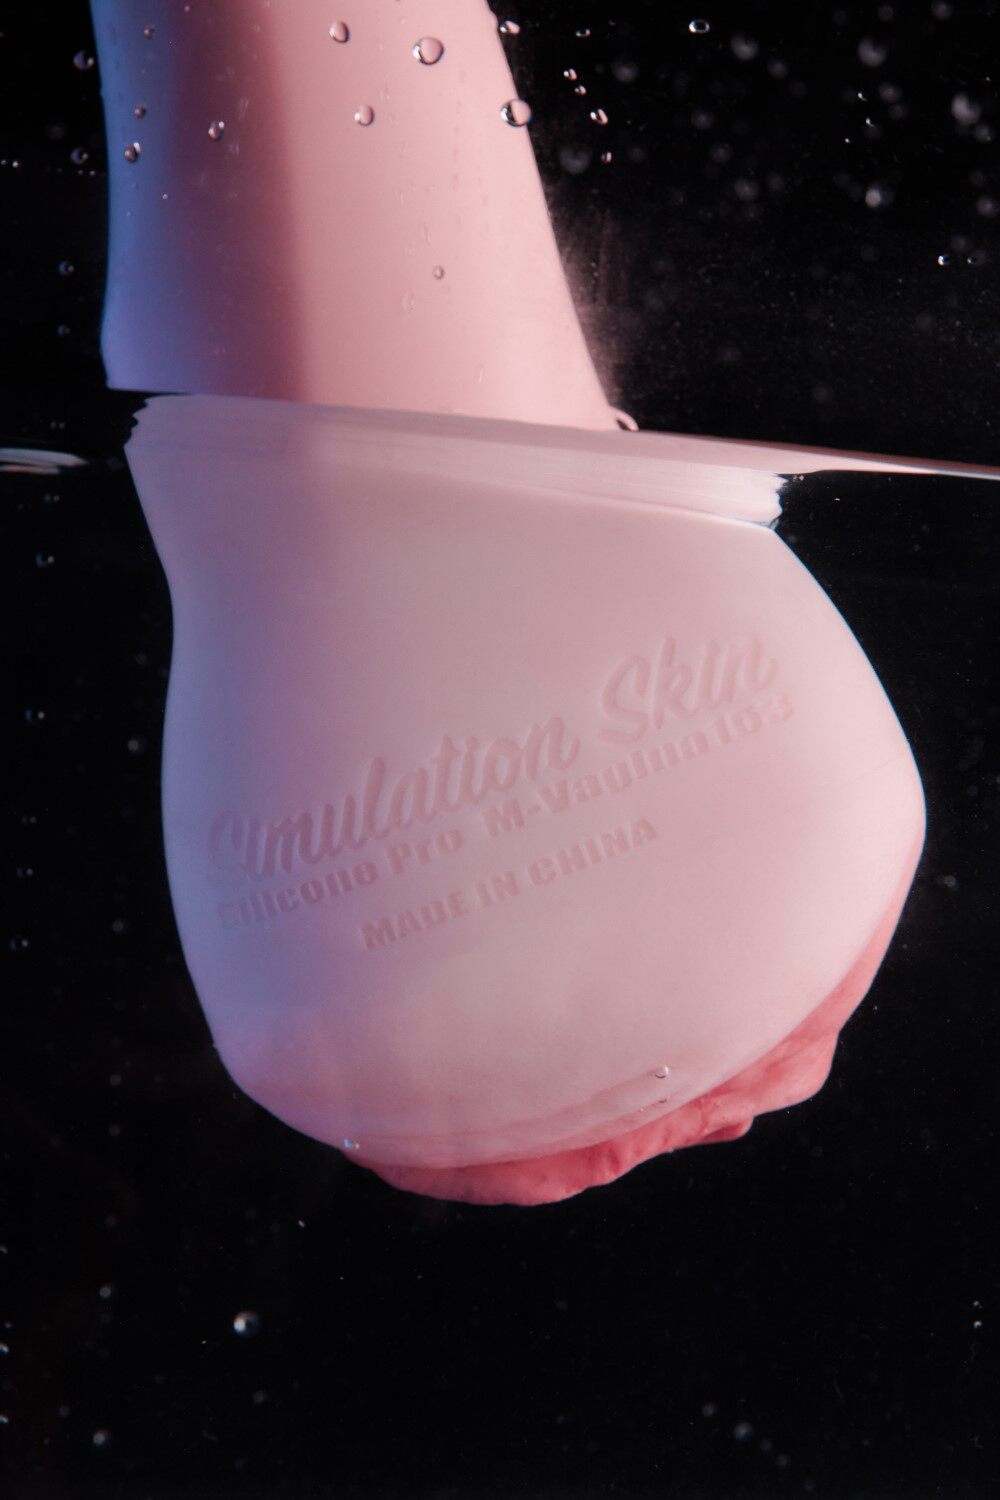 M-Vagina Climax Torso Silicone Masturbation Cup Cinnamon image1